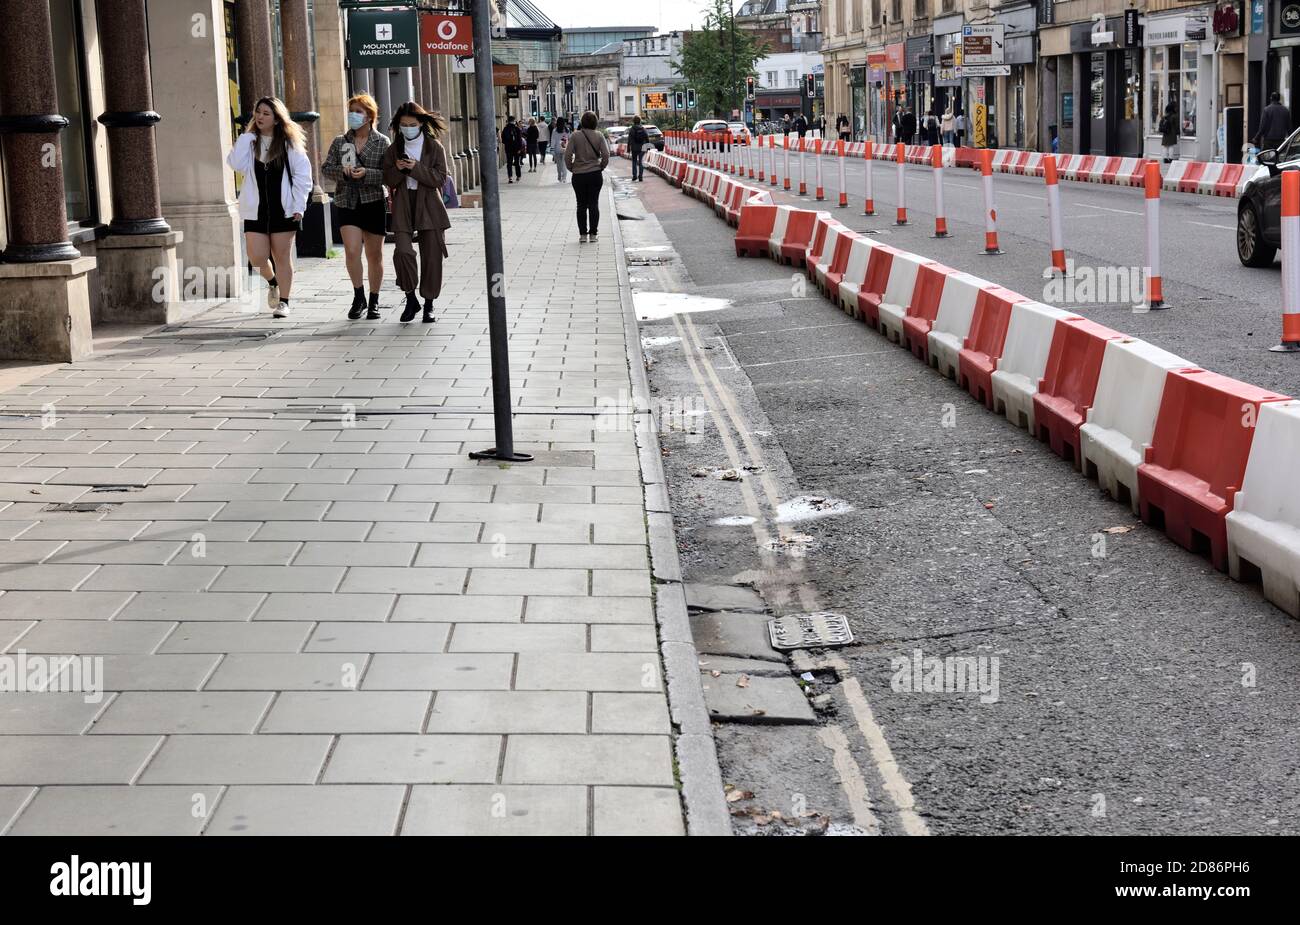 Pop-up-Radwege und Straßenbelag Erweiterung geschaffen, um Fahrradfahren aufgrund von covid zu fördern, aber verursacht Verkehrsstaus, mehr Verschmutzung Bristol Quee Stockfoto